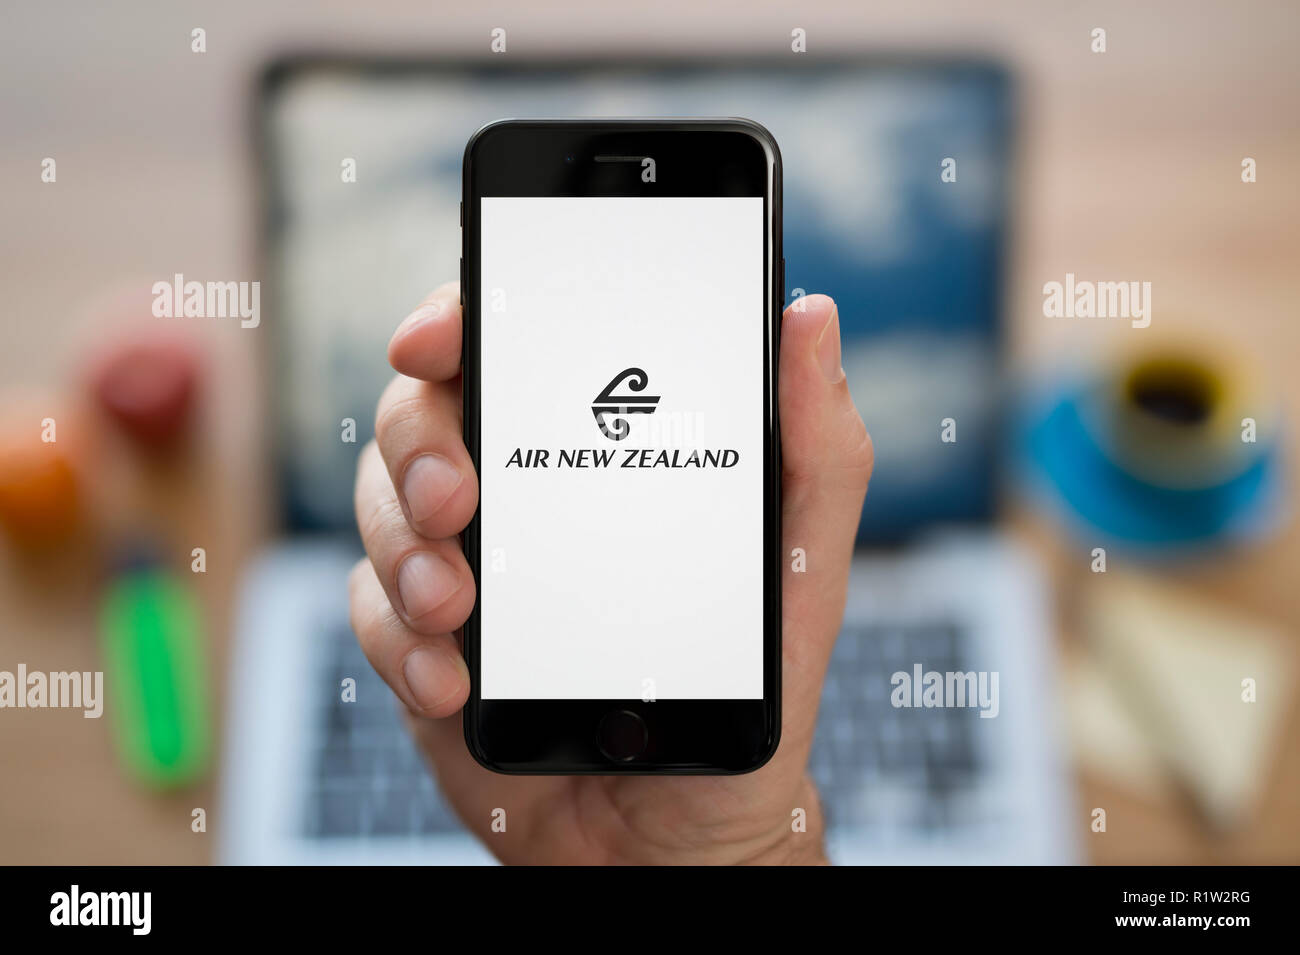 Ein Mann schaut auf seinem iPhone die zeigt die Air New Zealand logo, während saß an seinem Computer Schreibtisch (nur redaktionelle Nutzung). Stockfoto